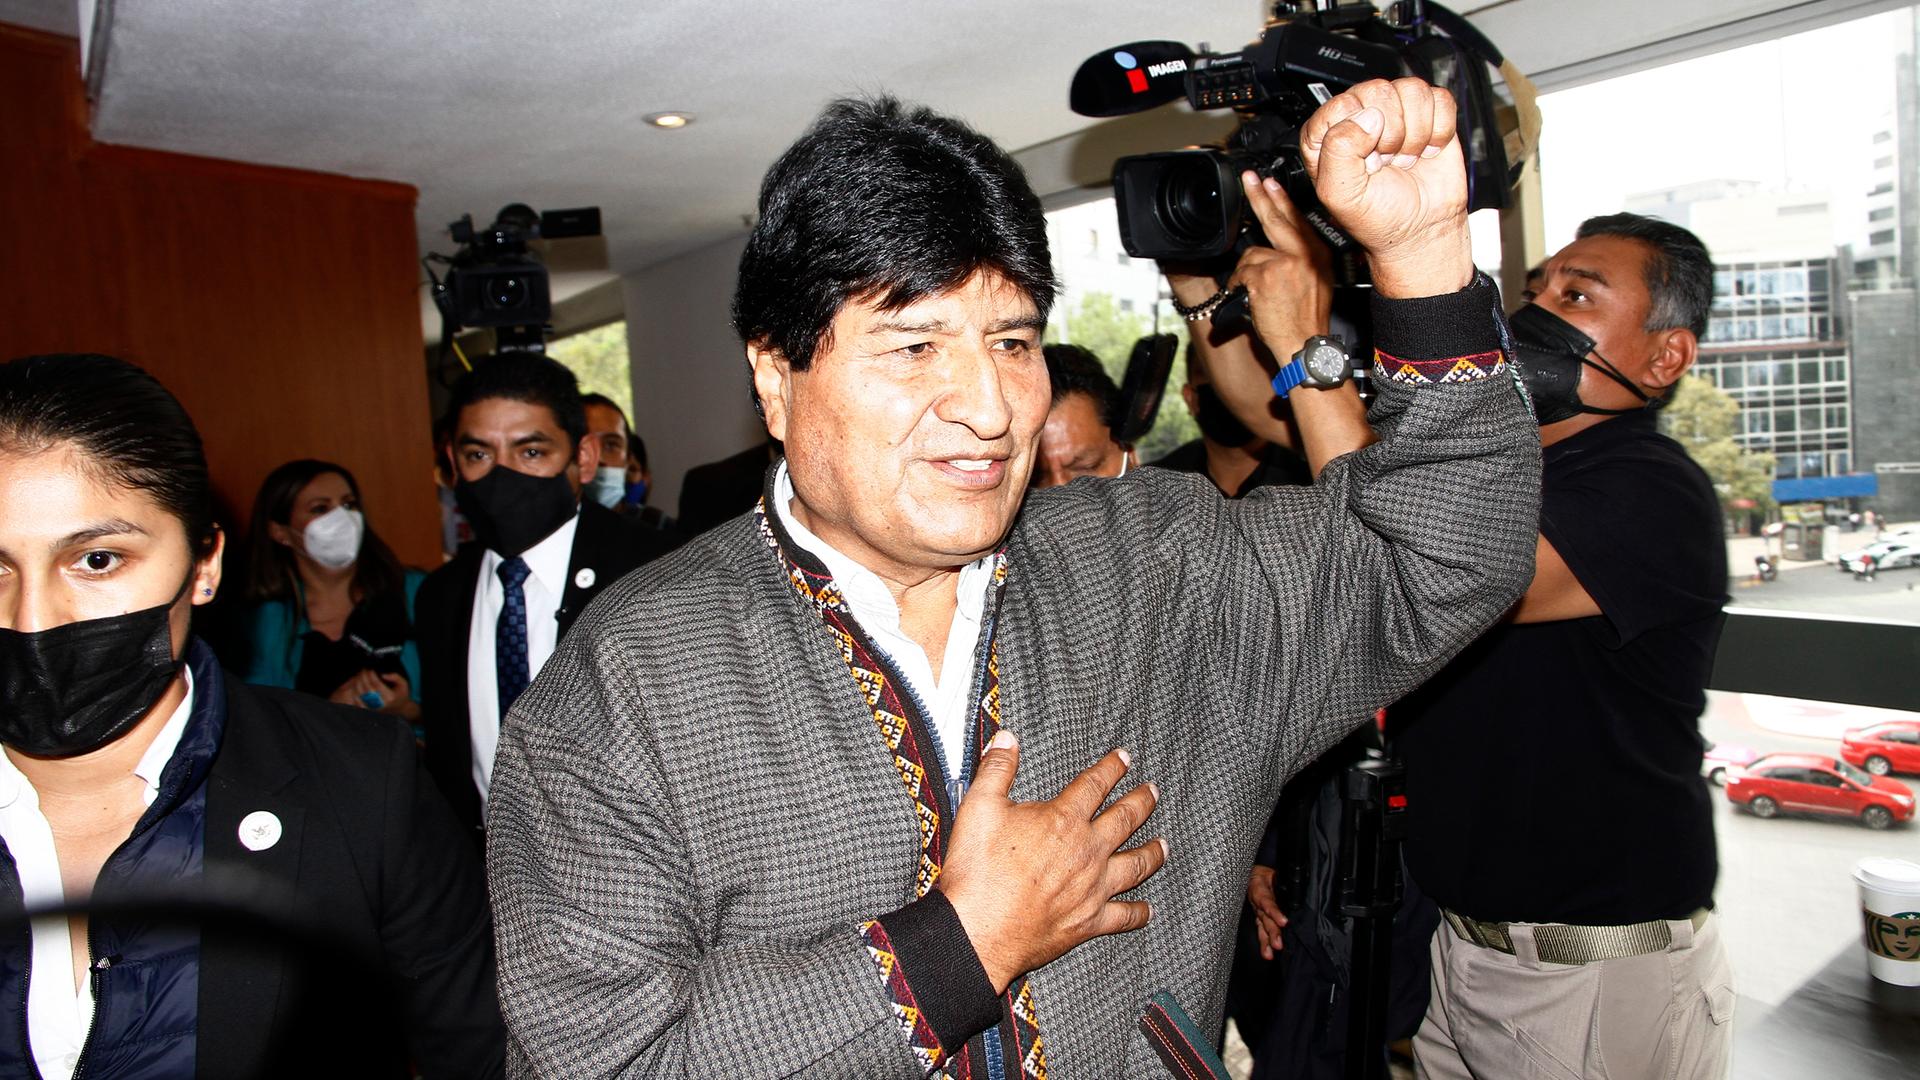 Morales steht mit erhobener Faust in einem Raum, neben ihm ein Mann mit einer Kamera und weitere Personen.